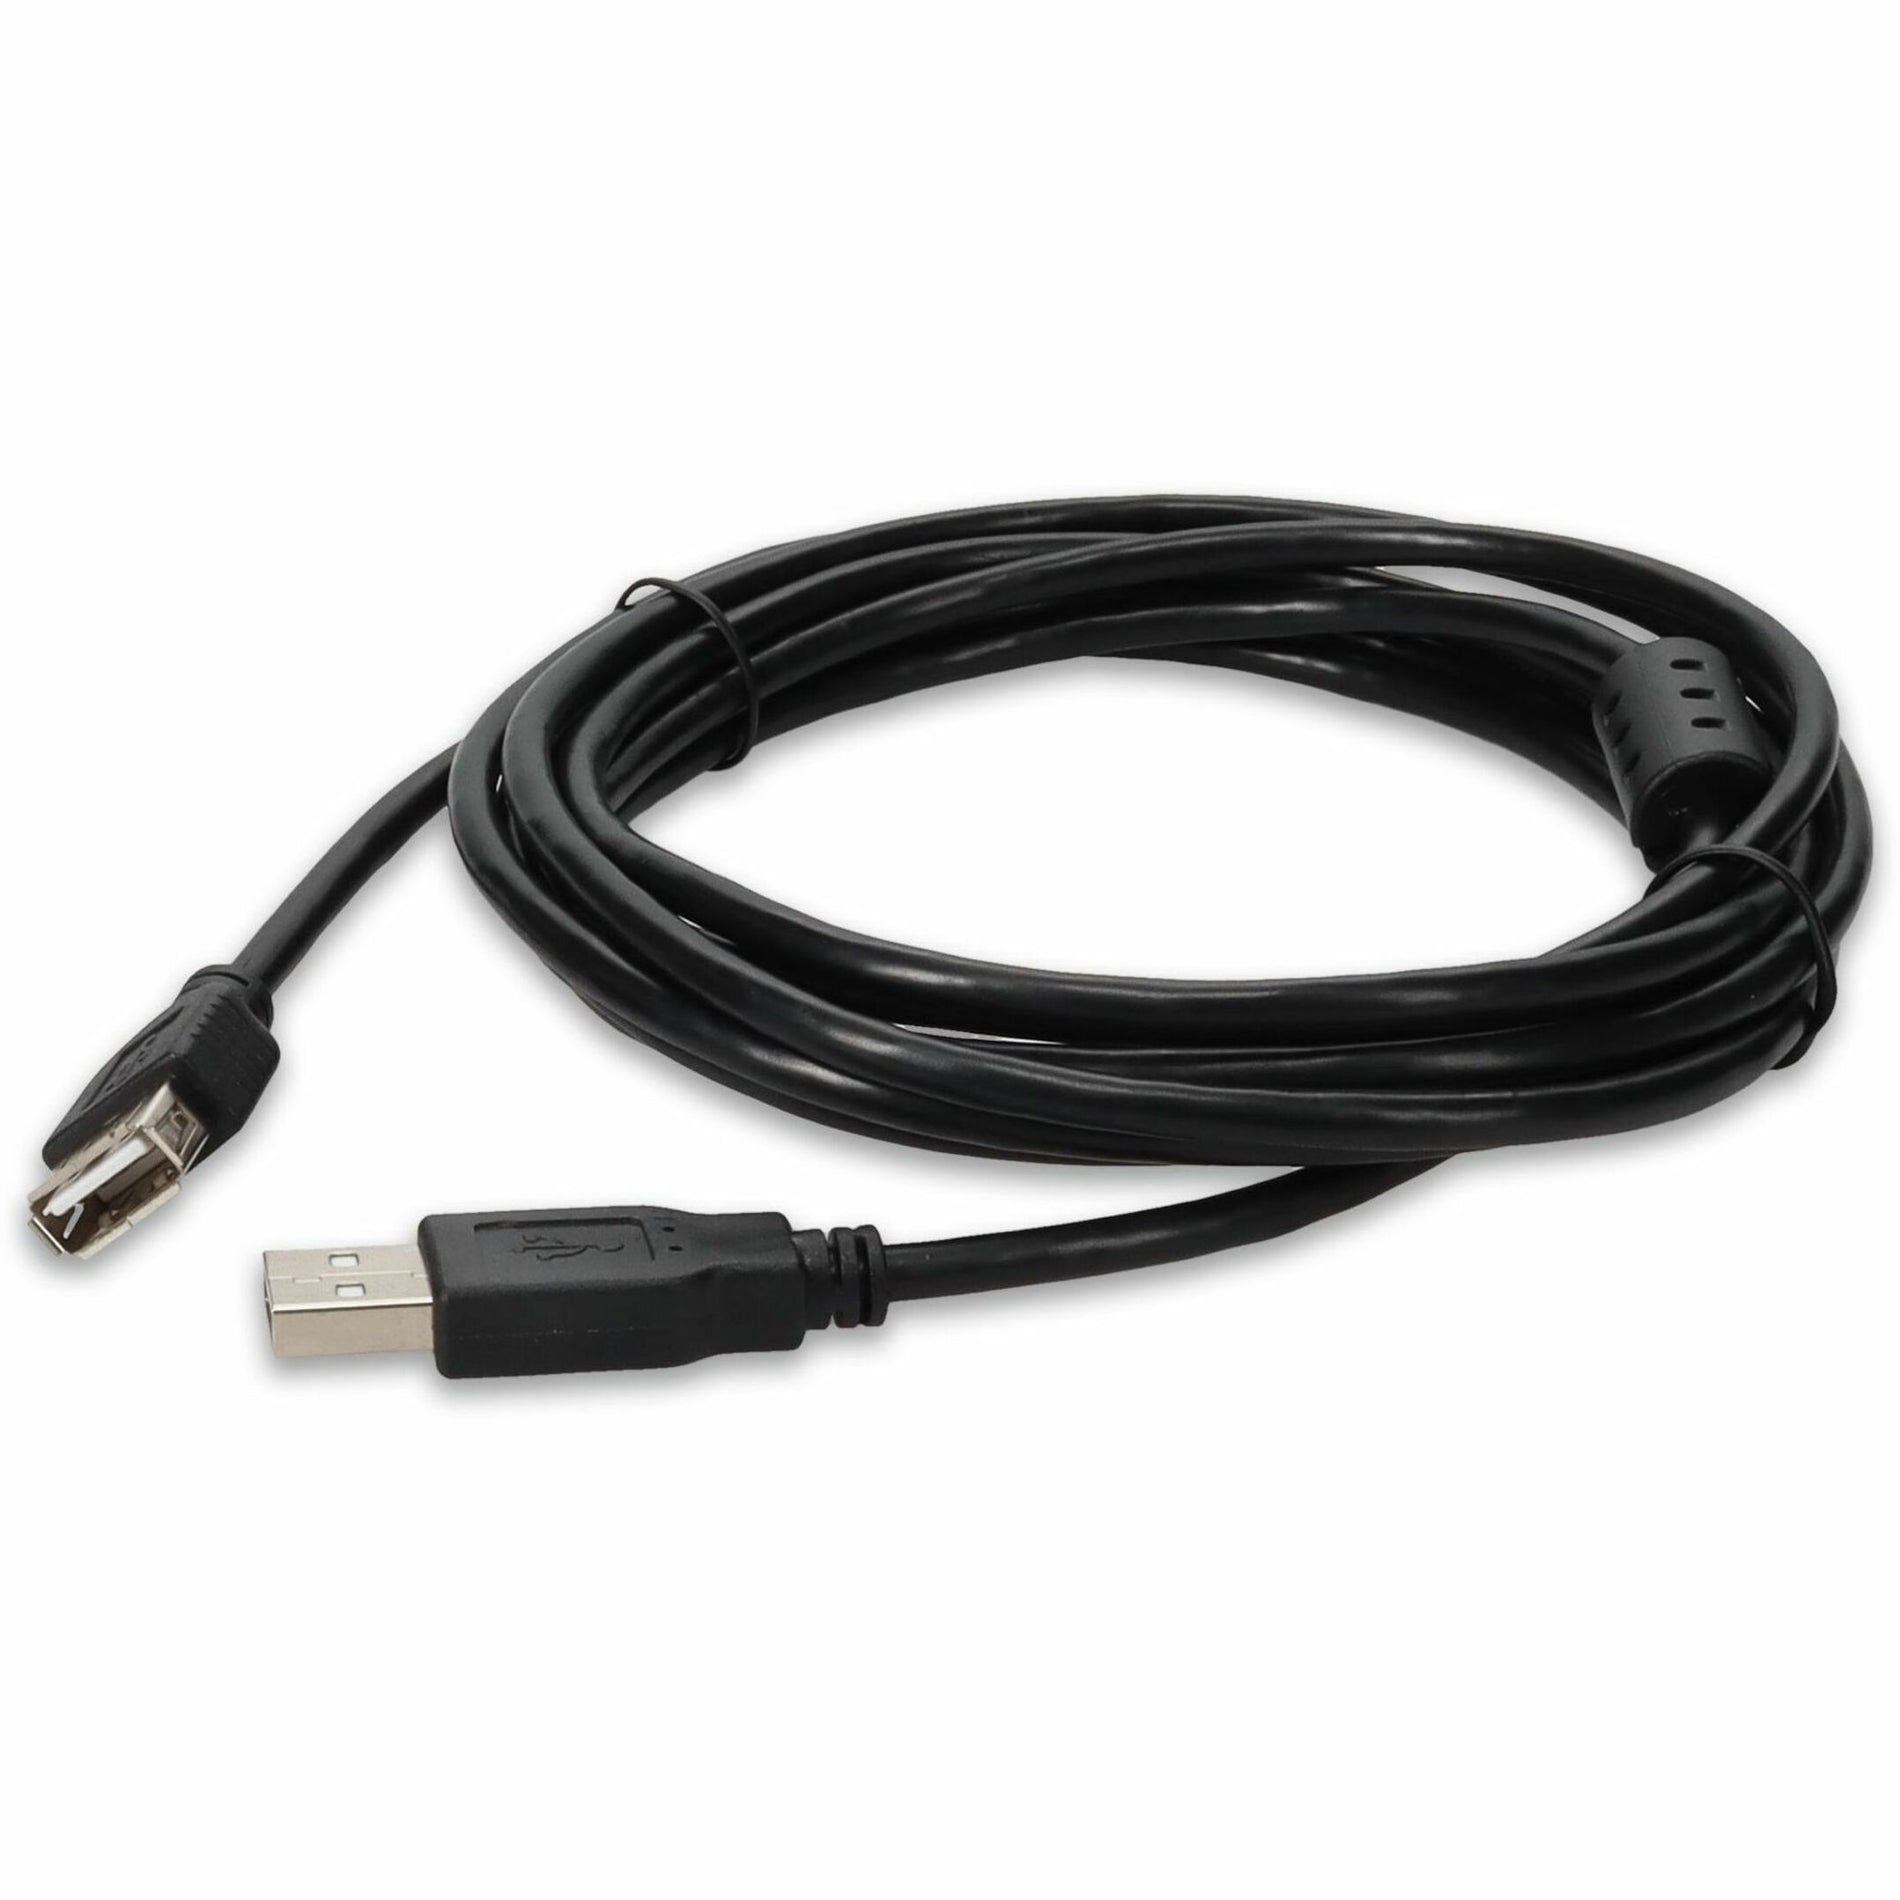 品牌：AddOn  产品名称：USBEXTAA10FB-5PK 批发5包 10ft USB 2.0 A to A 延长线，3M，黑色